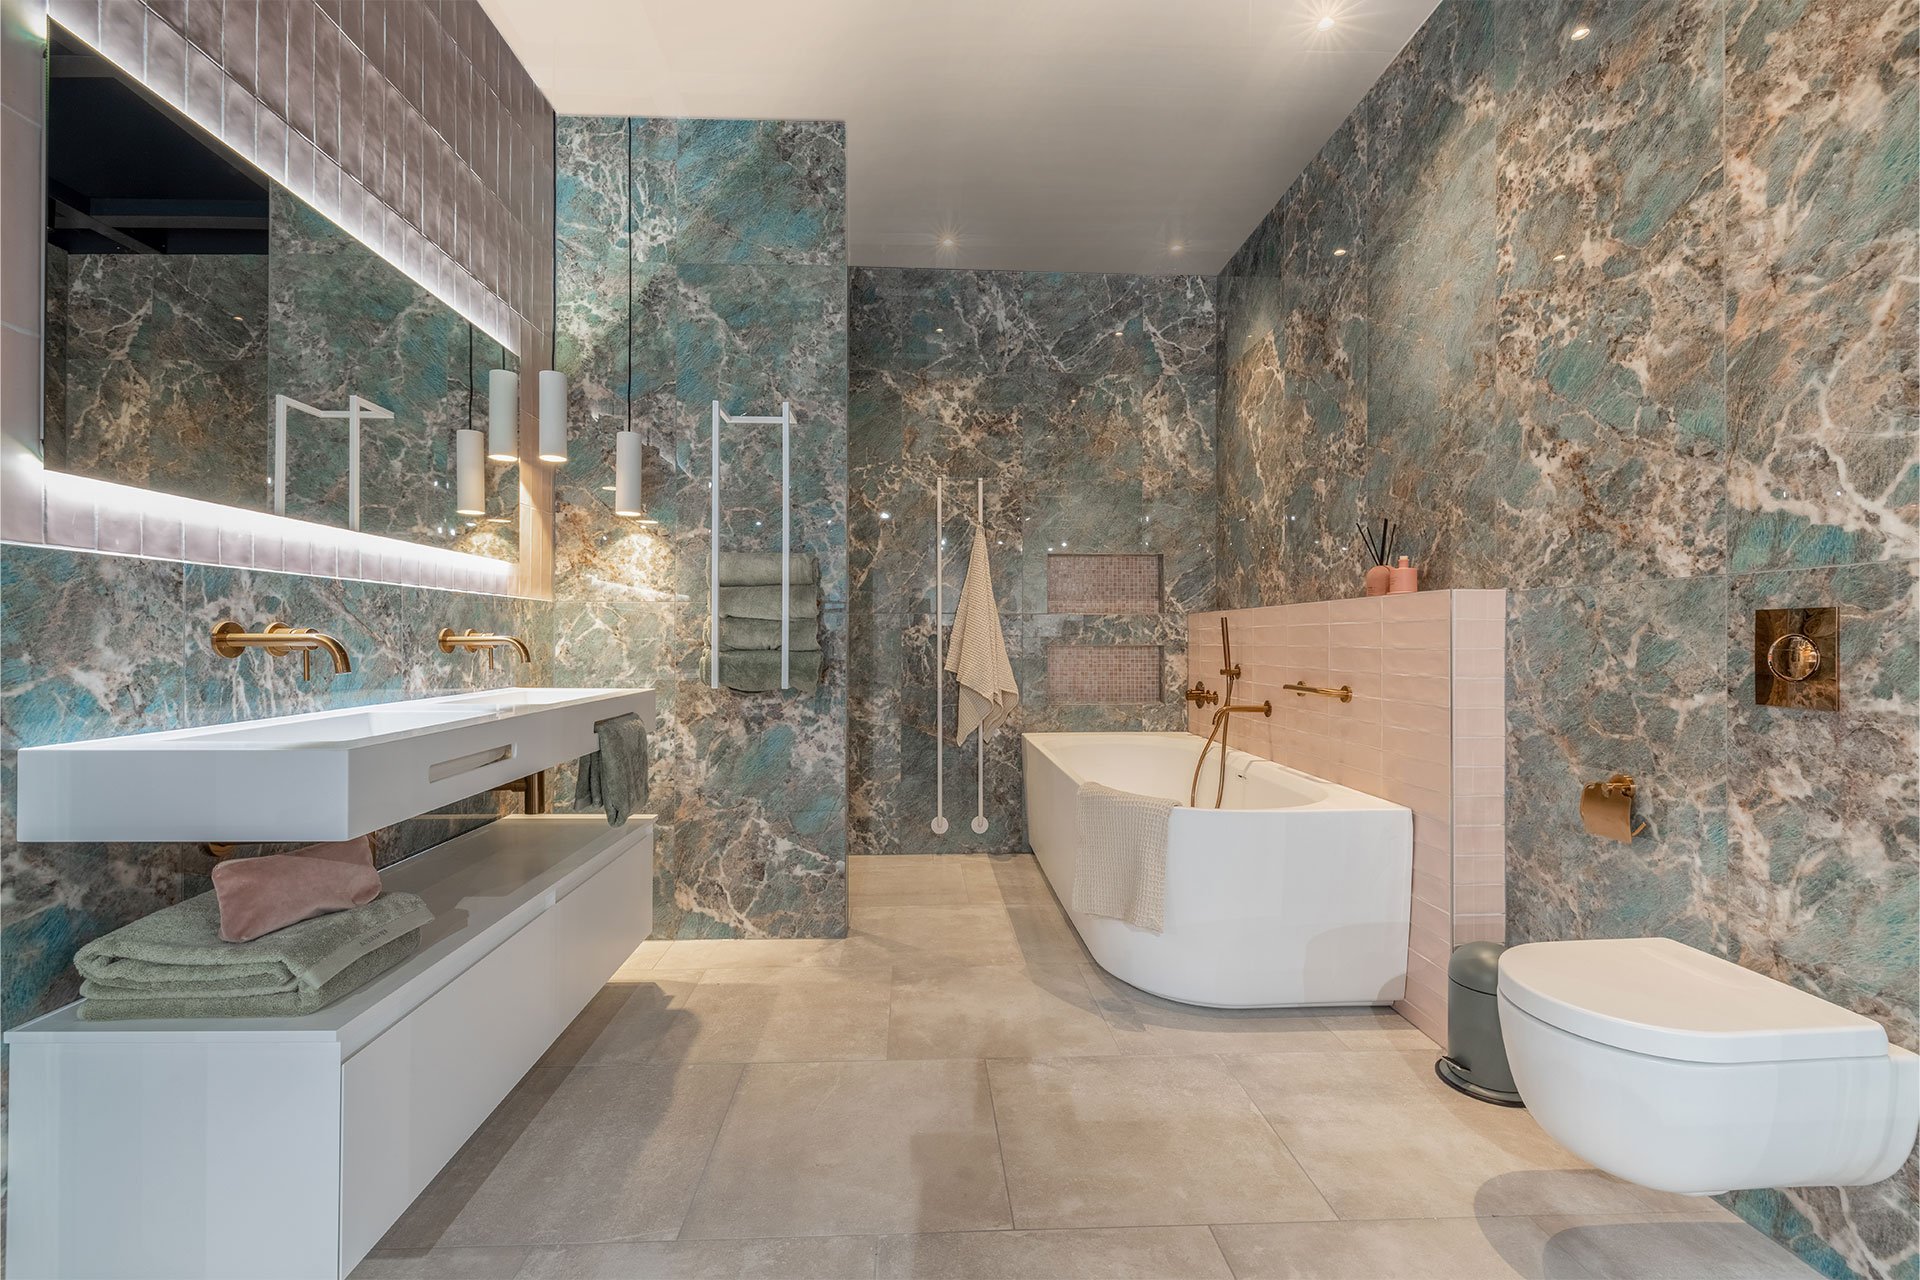 Robinets de baignoire De luxe en laiton doré robinet de salle de bains  mitigeur Robinet de douche mural à main fixé au mur Ensembles de robinets  de